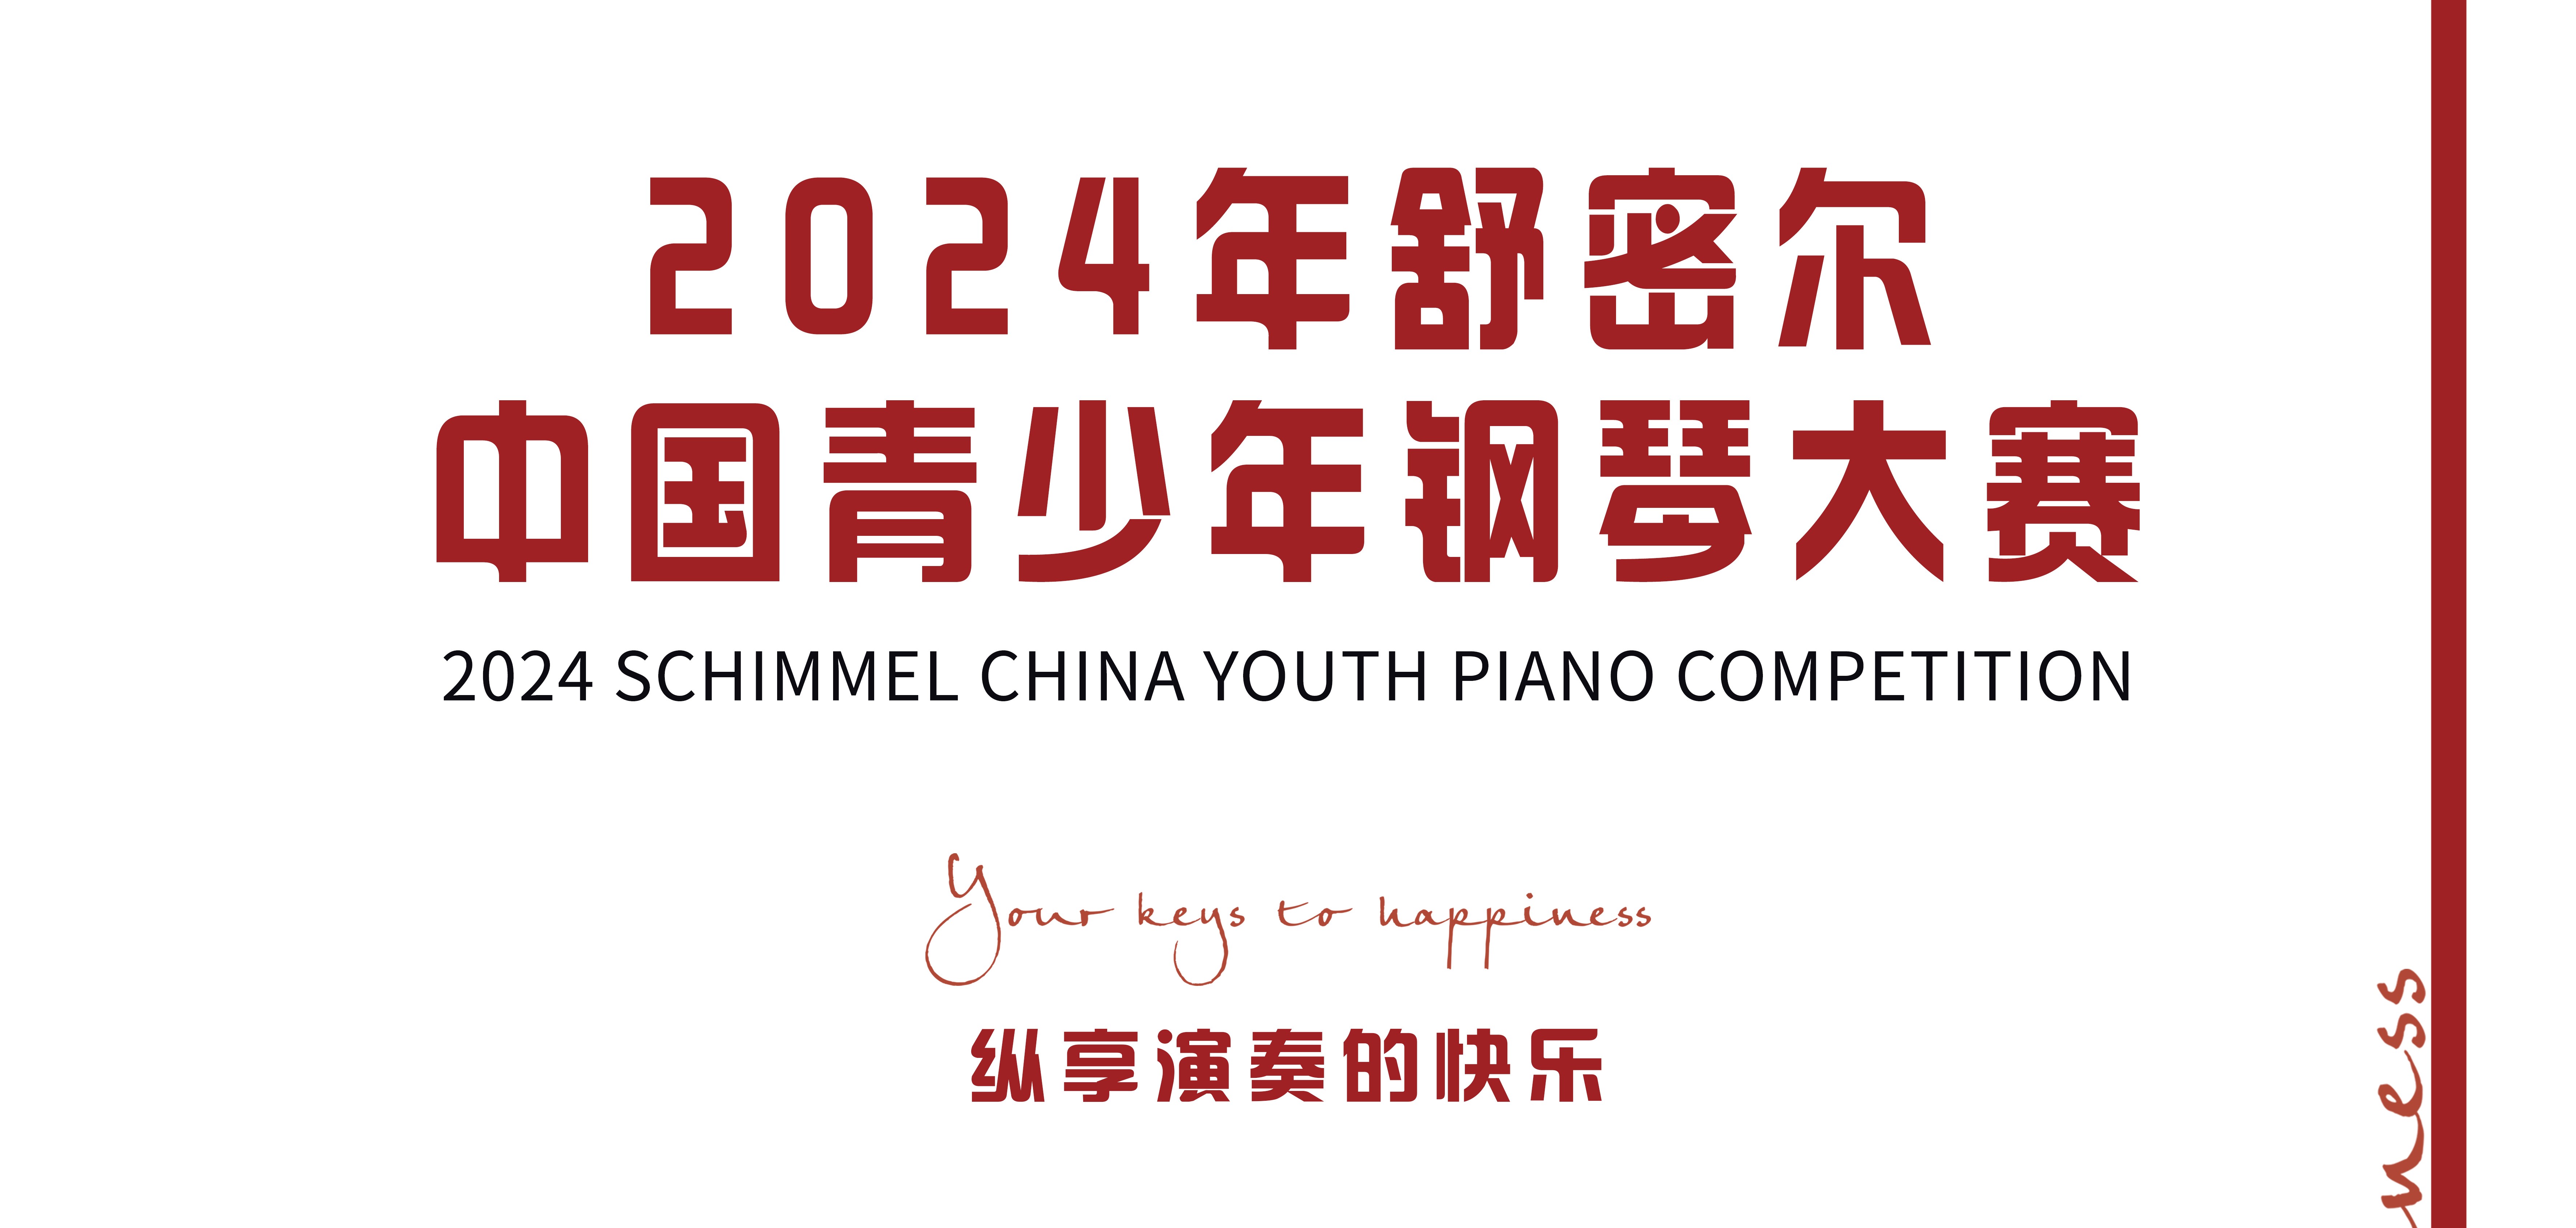 2024年舒密尔中国青少年钢琴大赛总章程